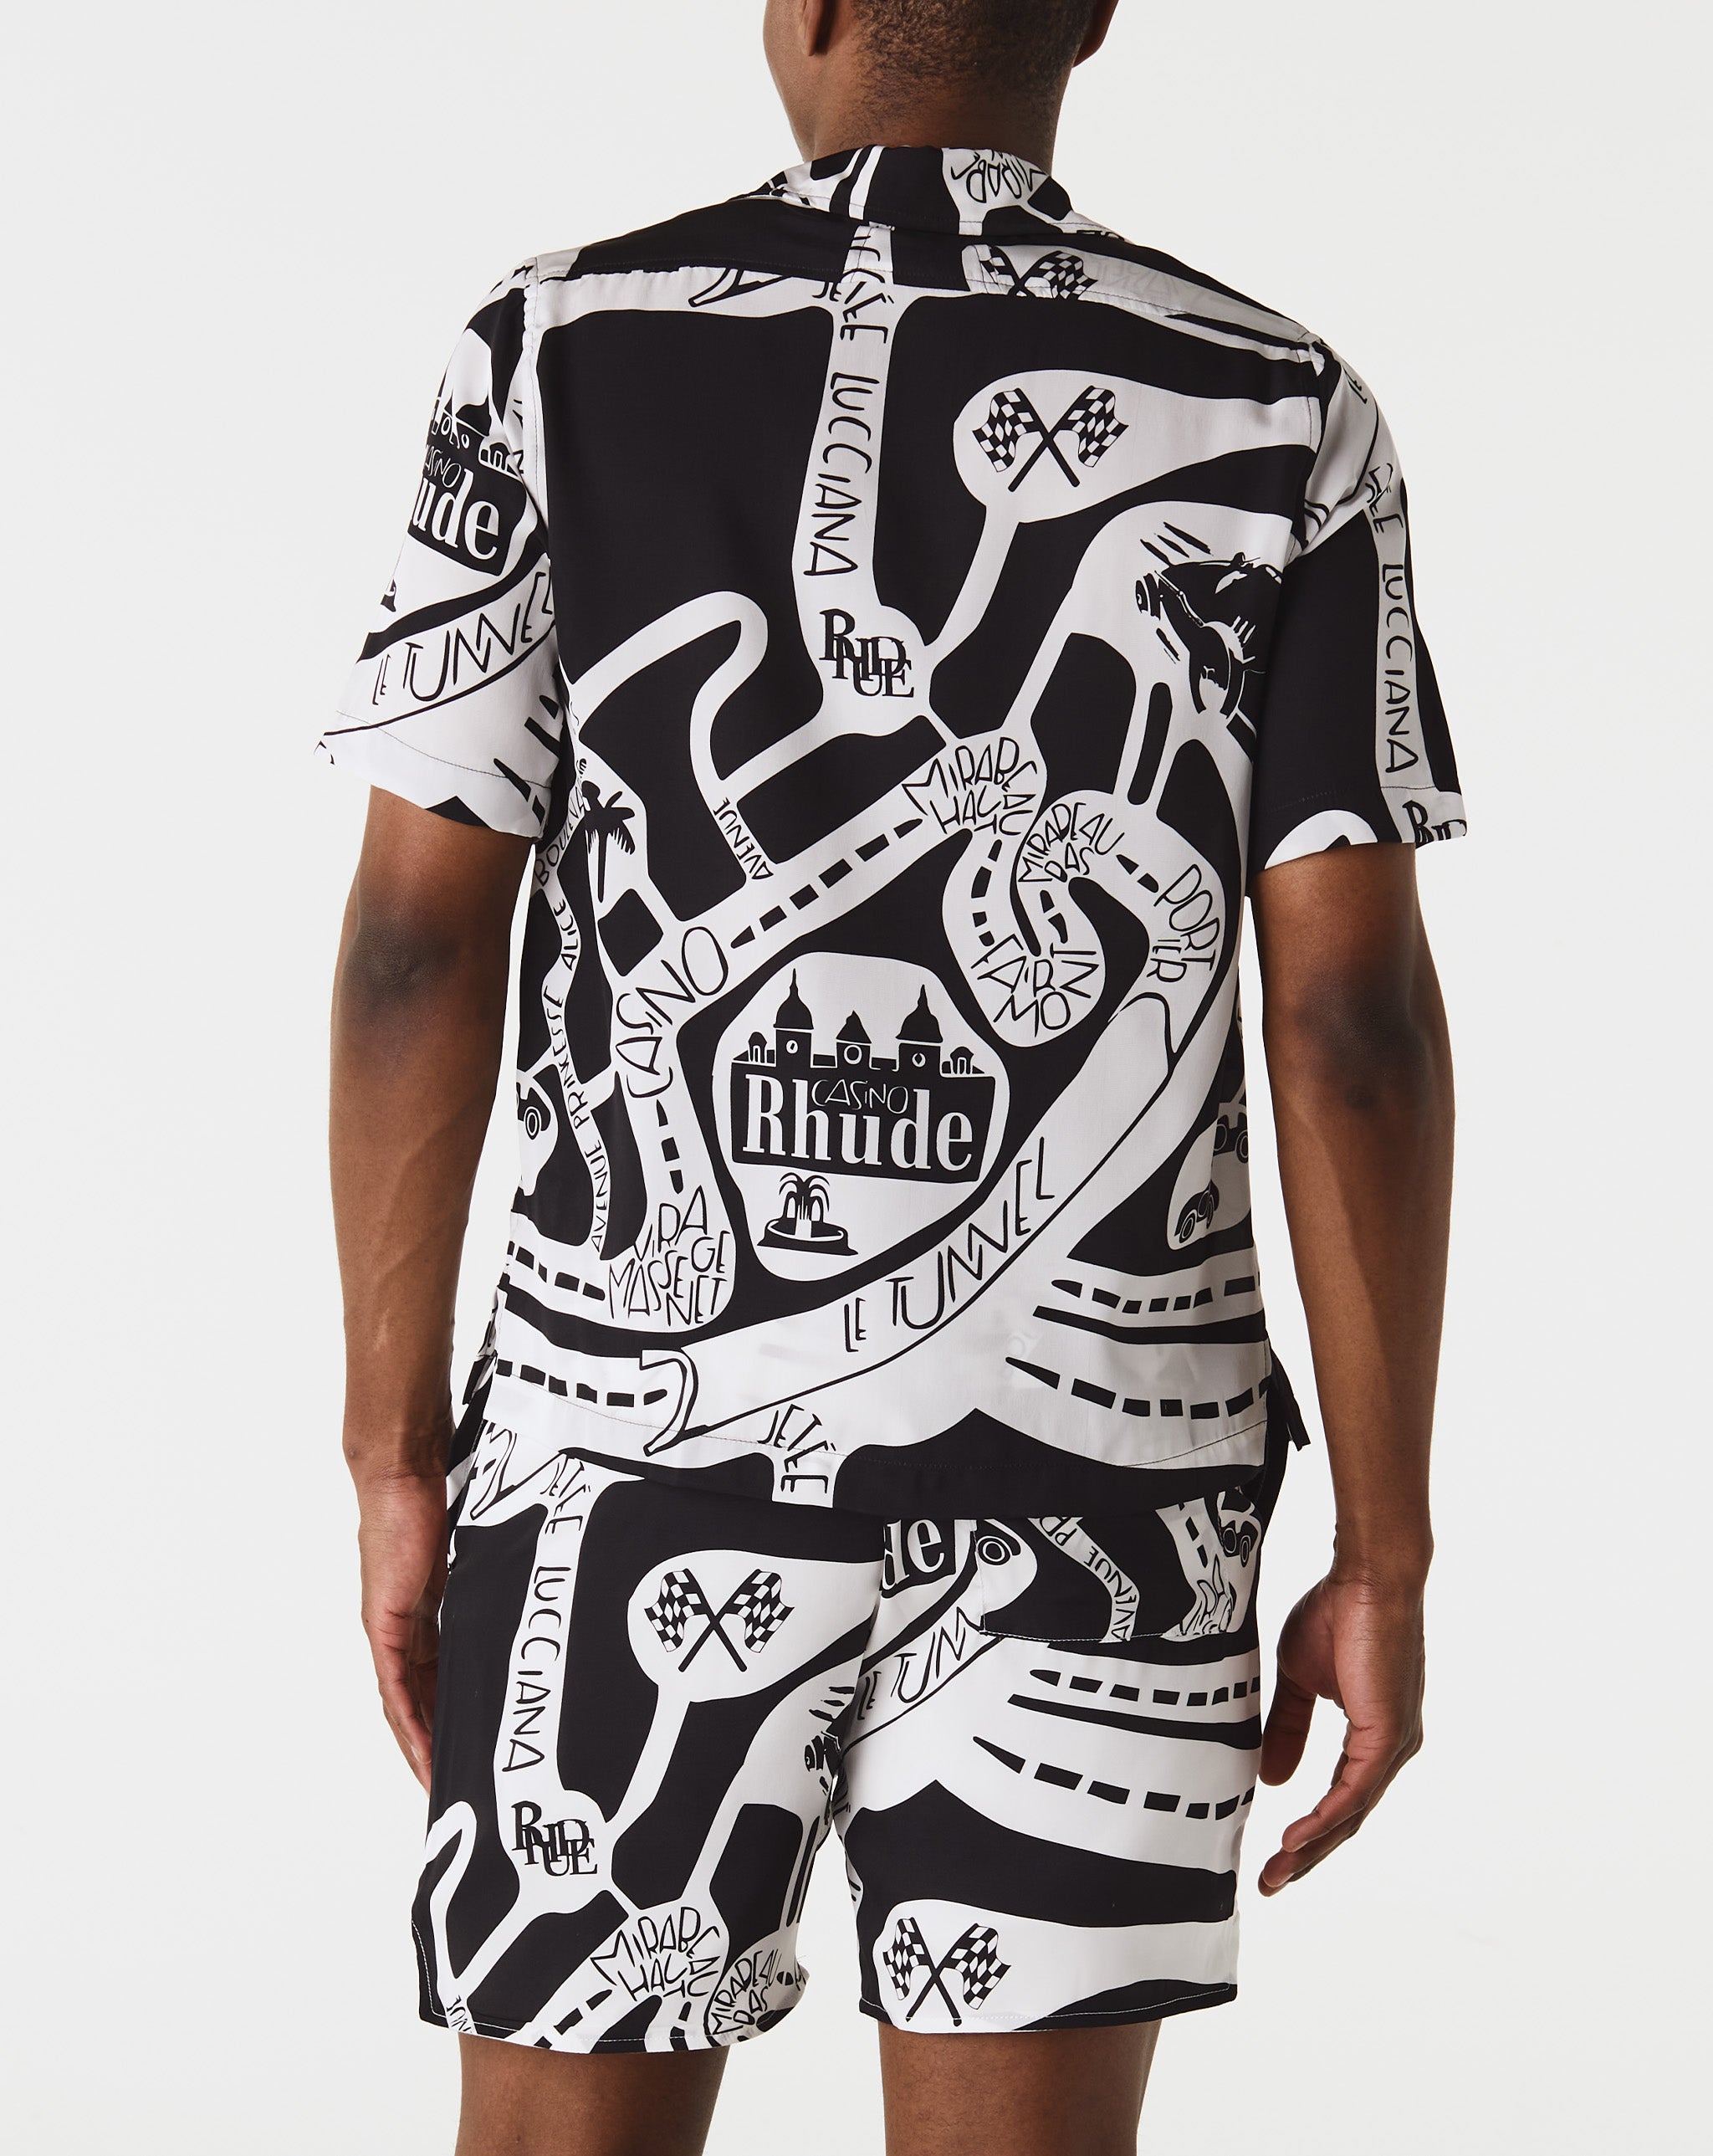 Rhude Strada Silk Shirt  - Cheap Urlfreeze Jordan outlet